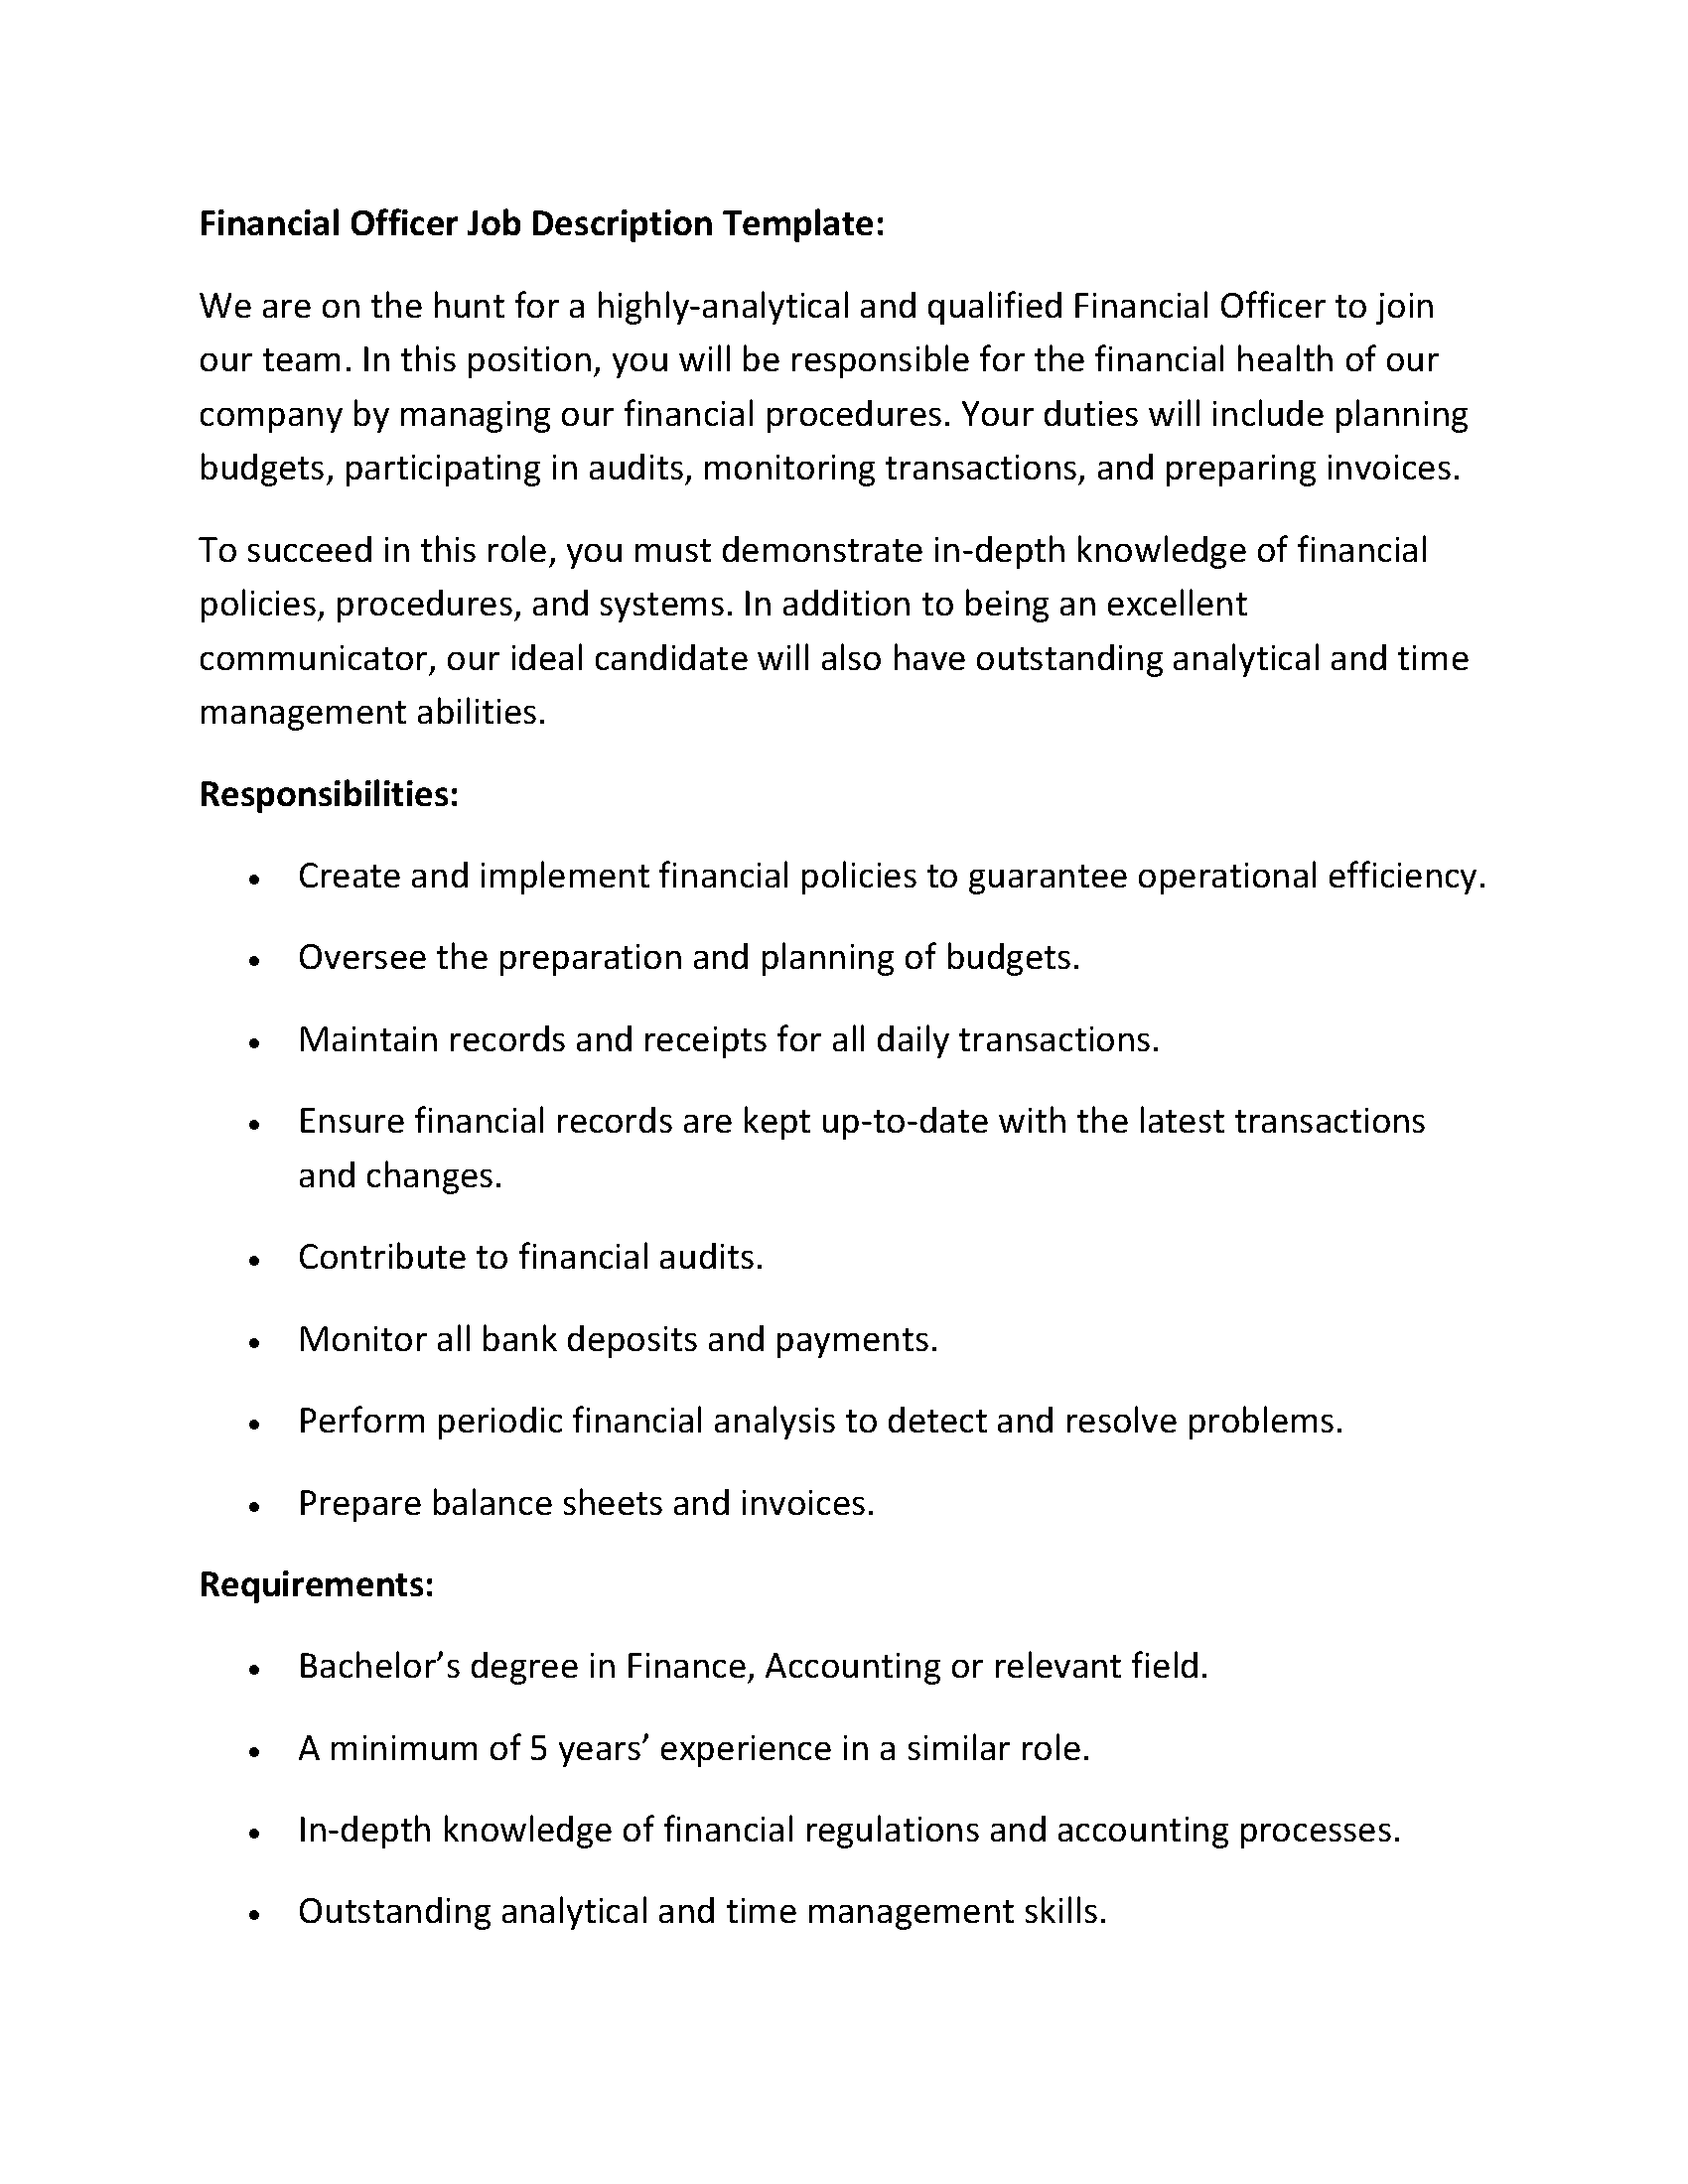 Financial Officer Job Description Template